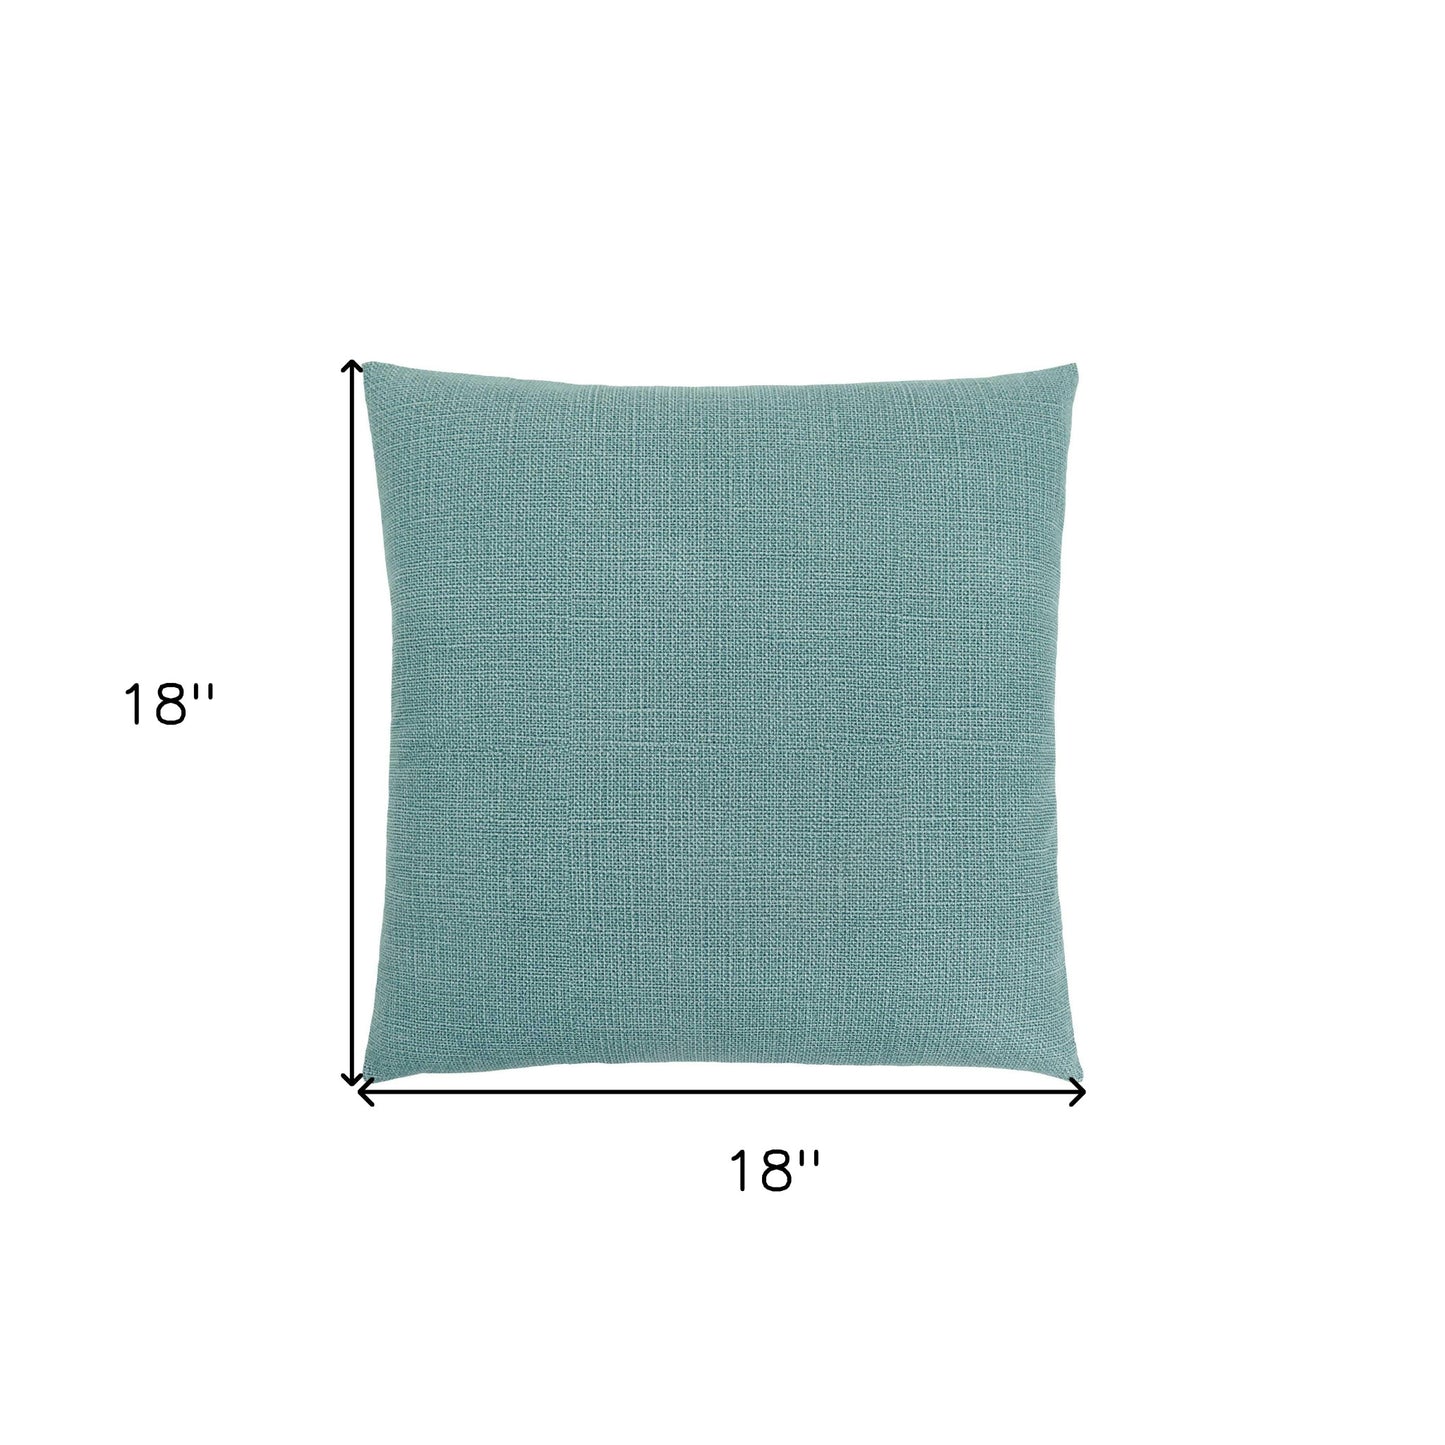 18" X 18" Light Green Polyester Interlocking Zippered Pillow